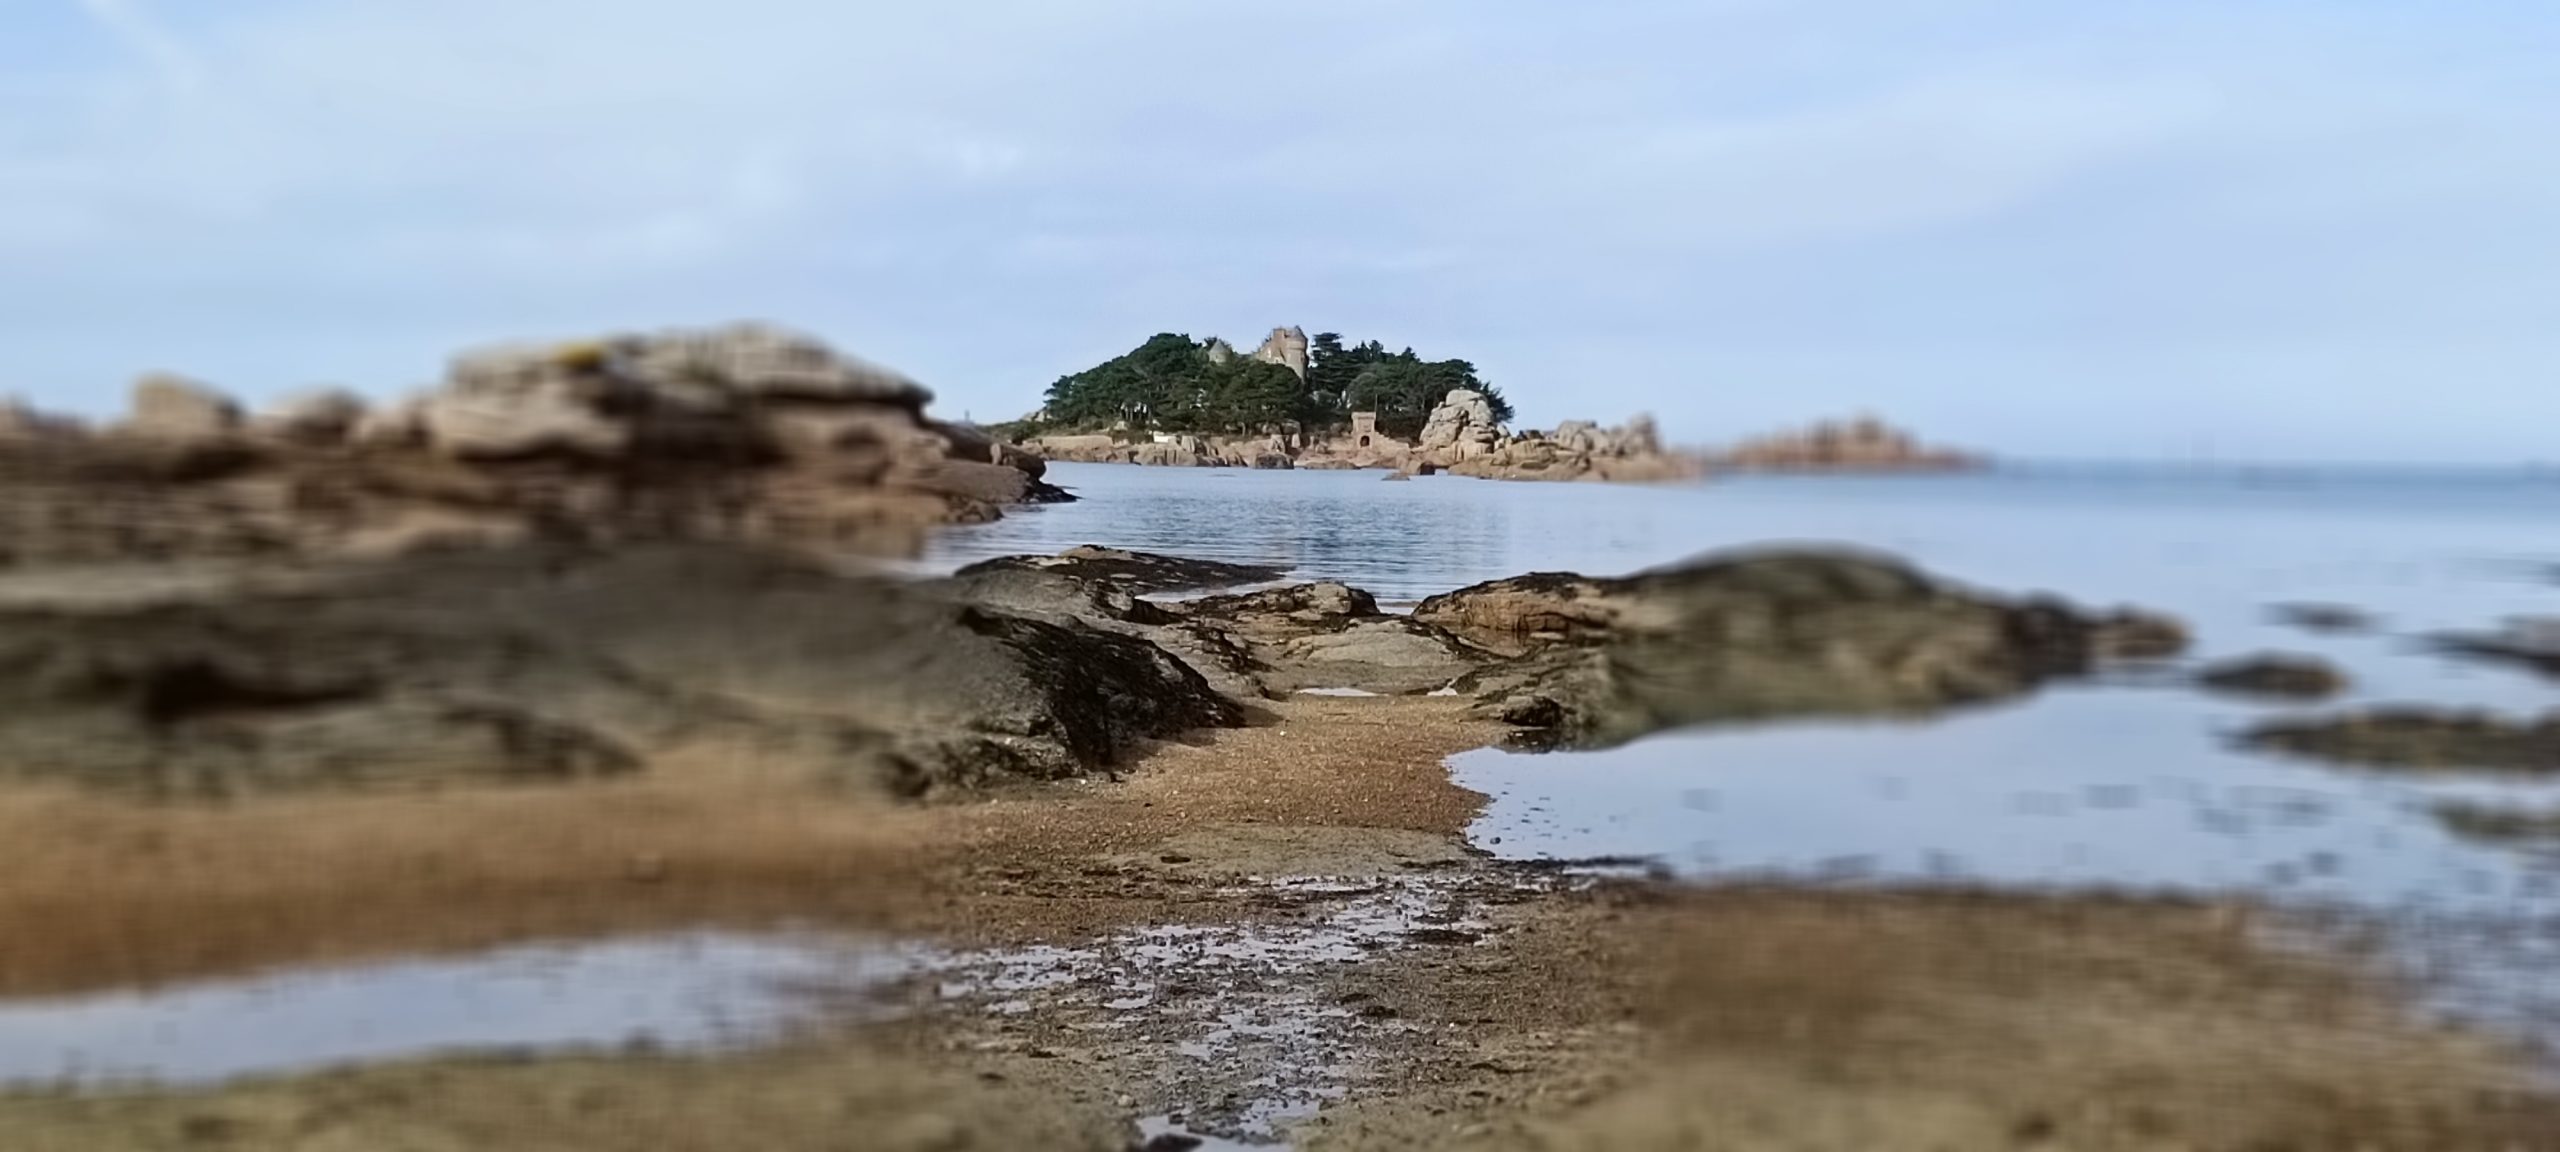 Trégastel ses plages et ses rochers, ici plage en face du chateau de coasteres